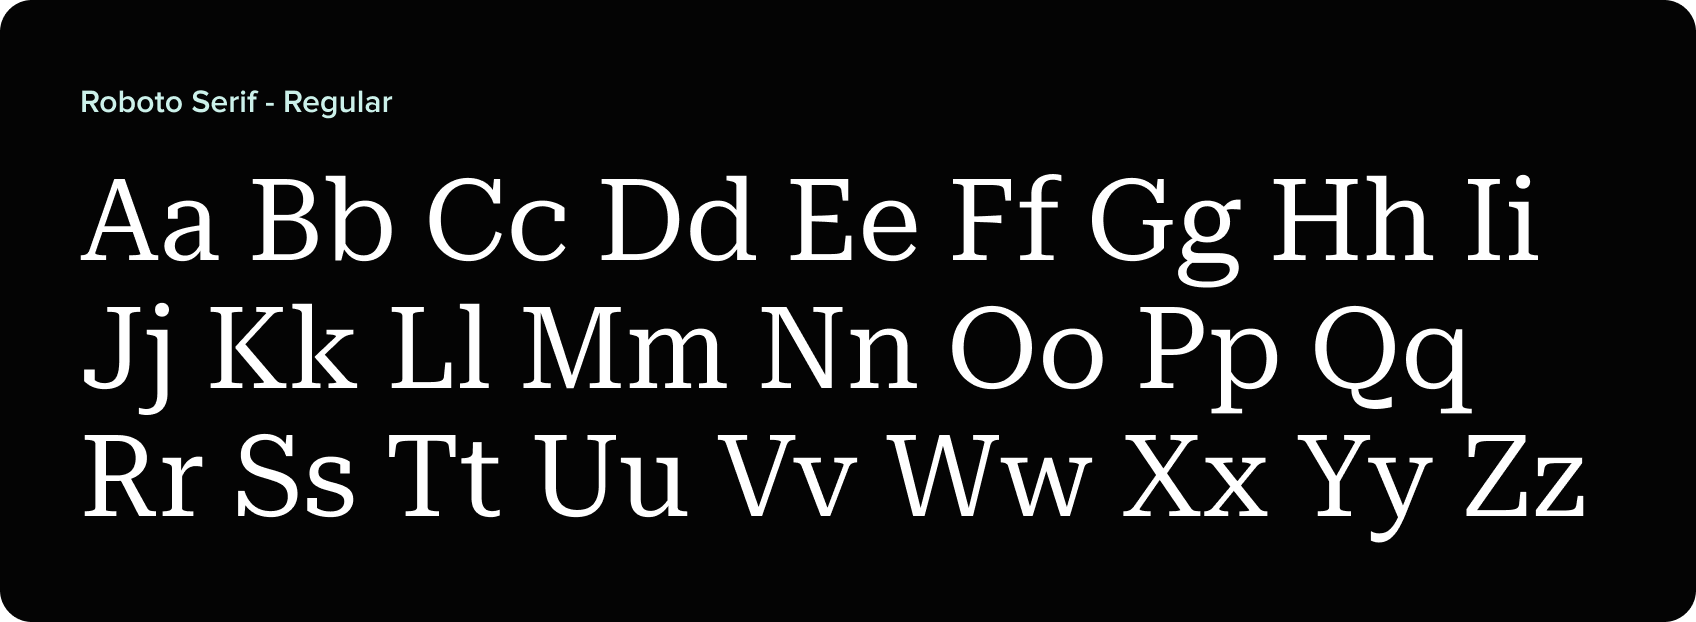 Roboto serif regular font specification